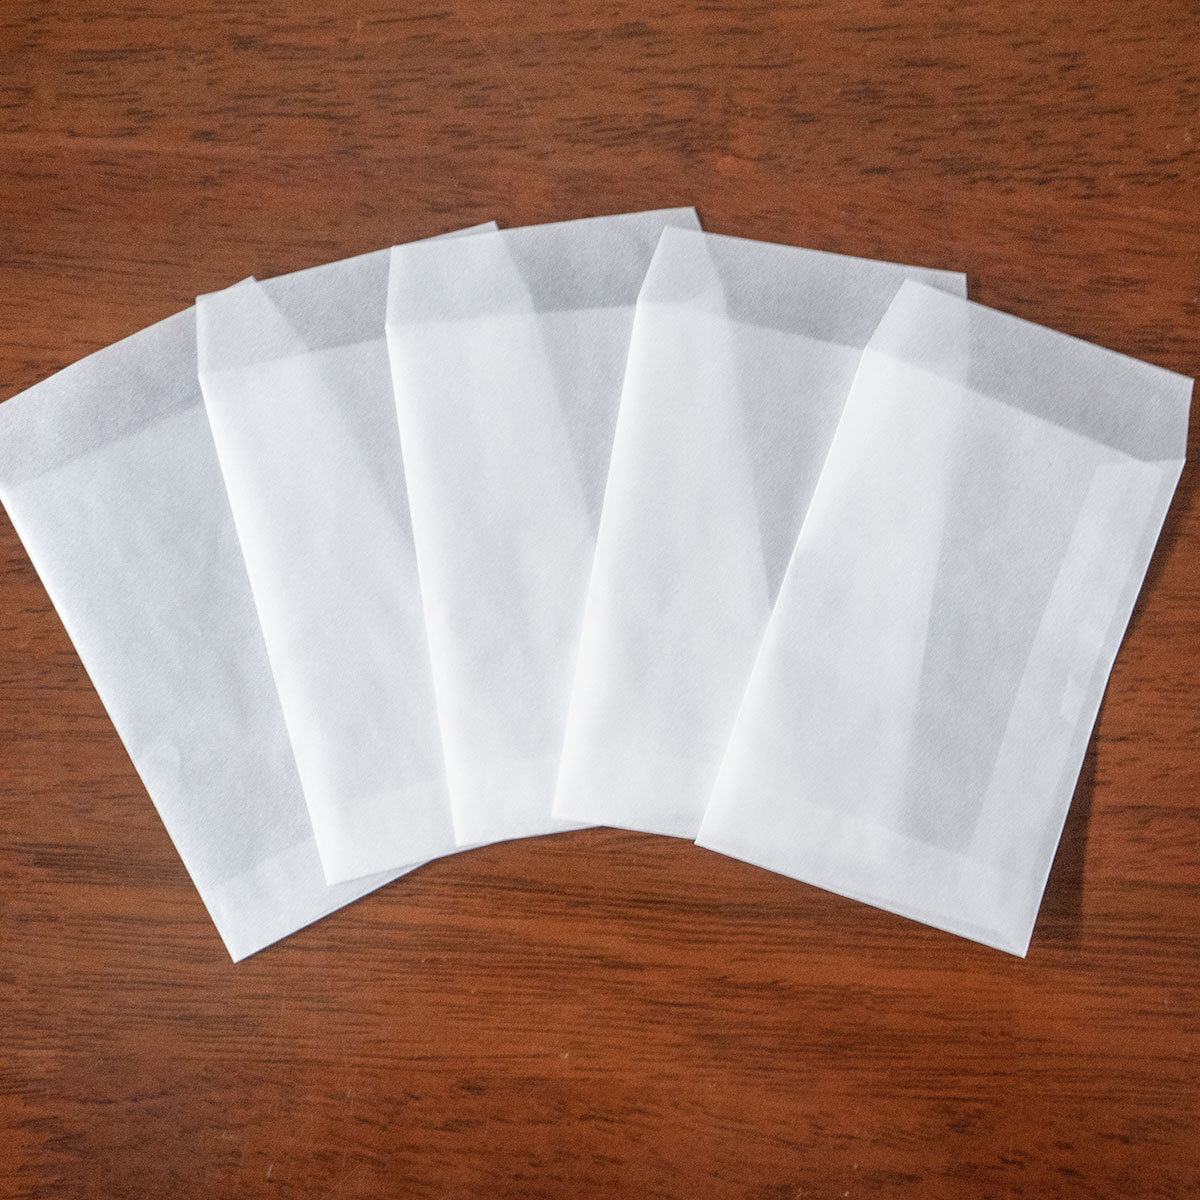 国産グラシン紙封筒【小タテ型】白無地 65×100mm 平袋 ポチ袋 名刺サイズ バッグ